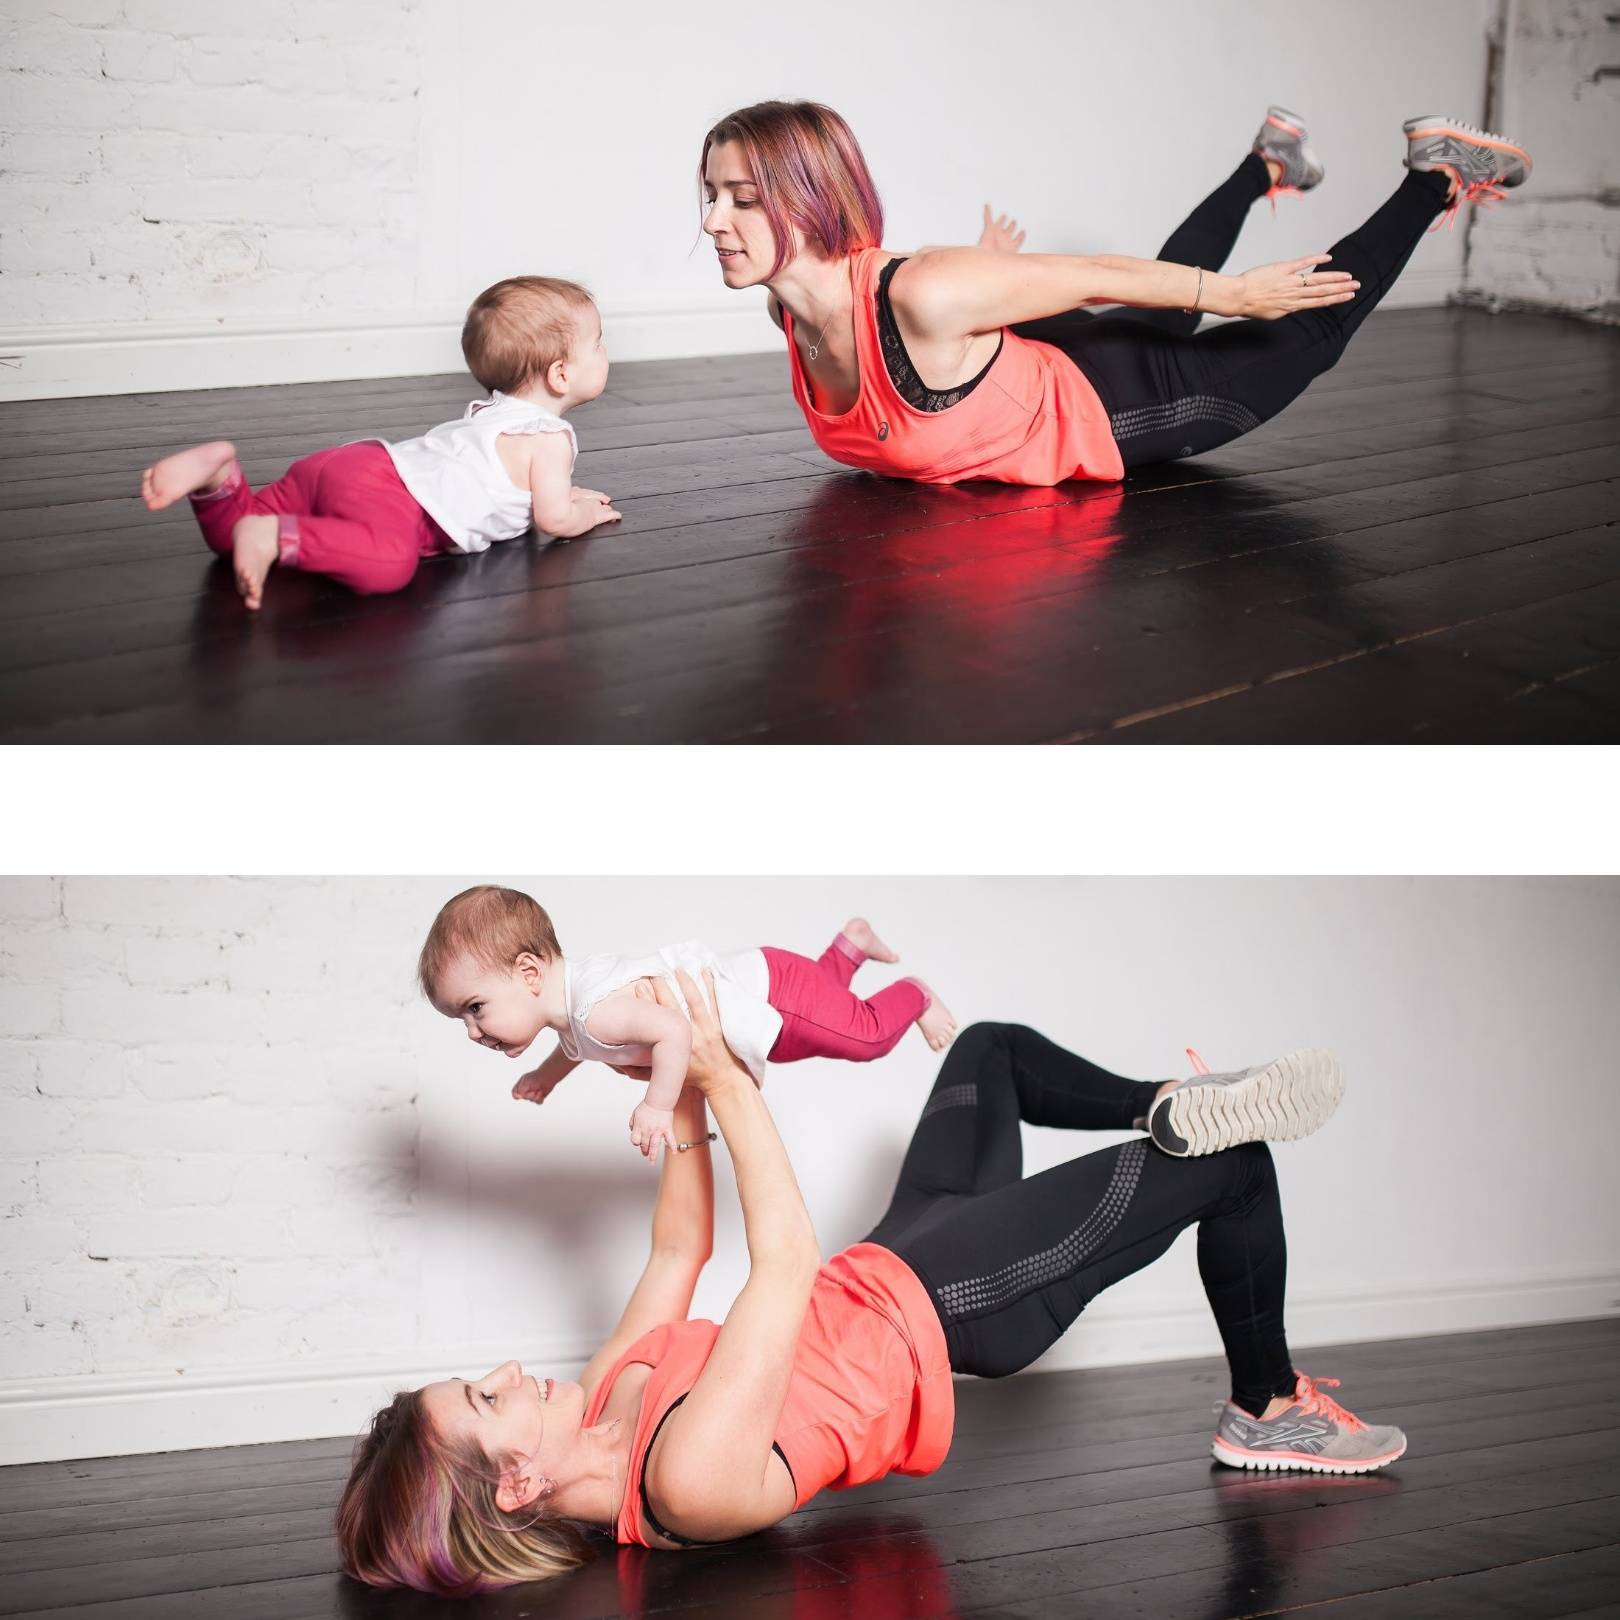 Йога после родов: когда можно начинать, как правильно выполнять упражнения дома?